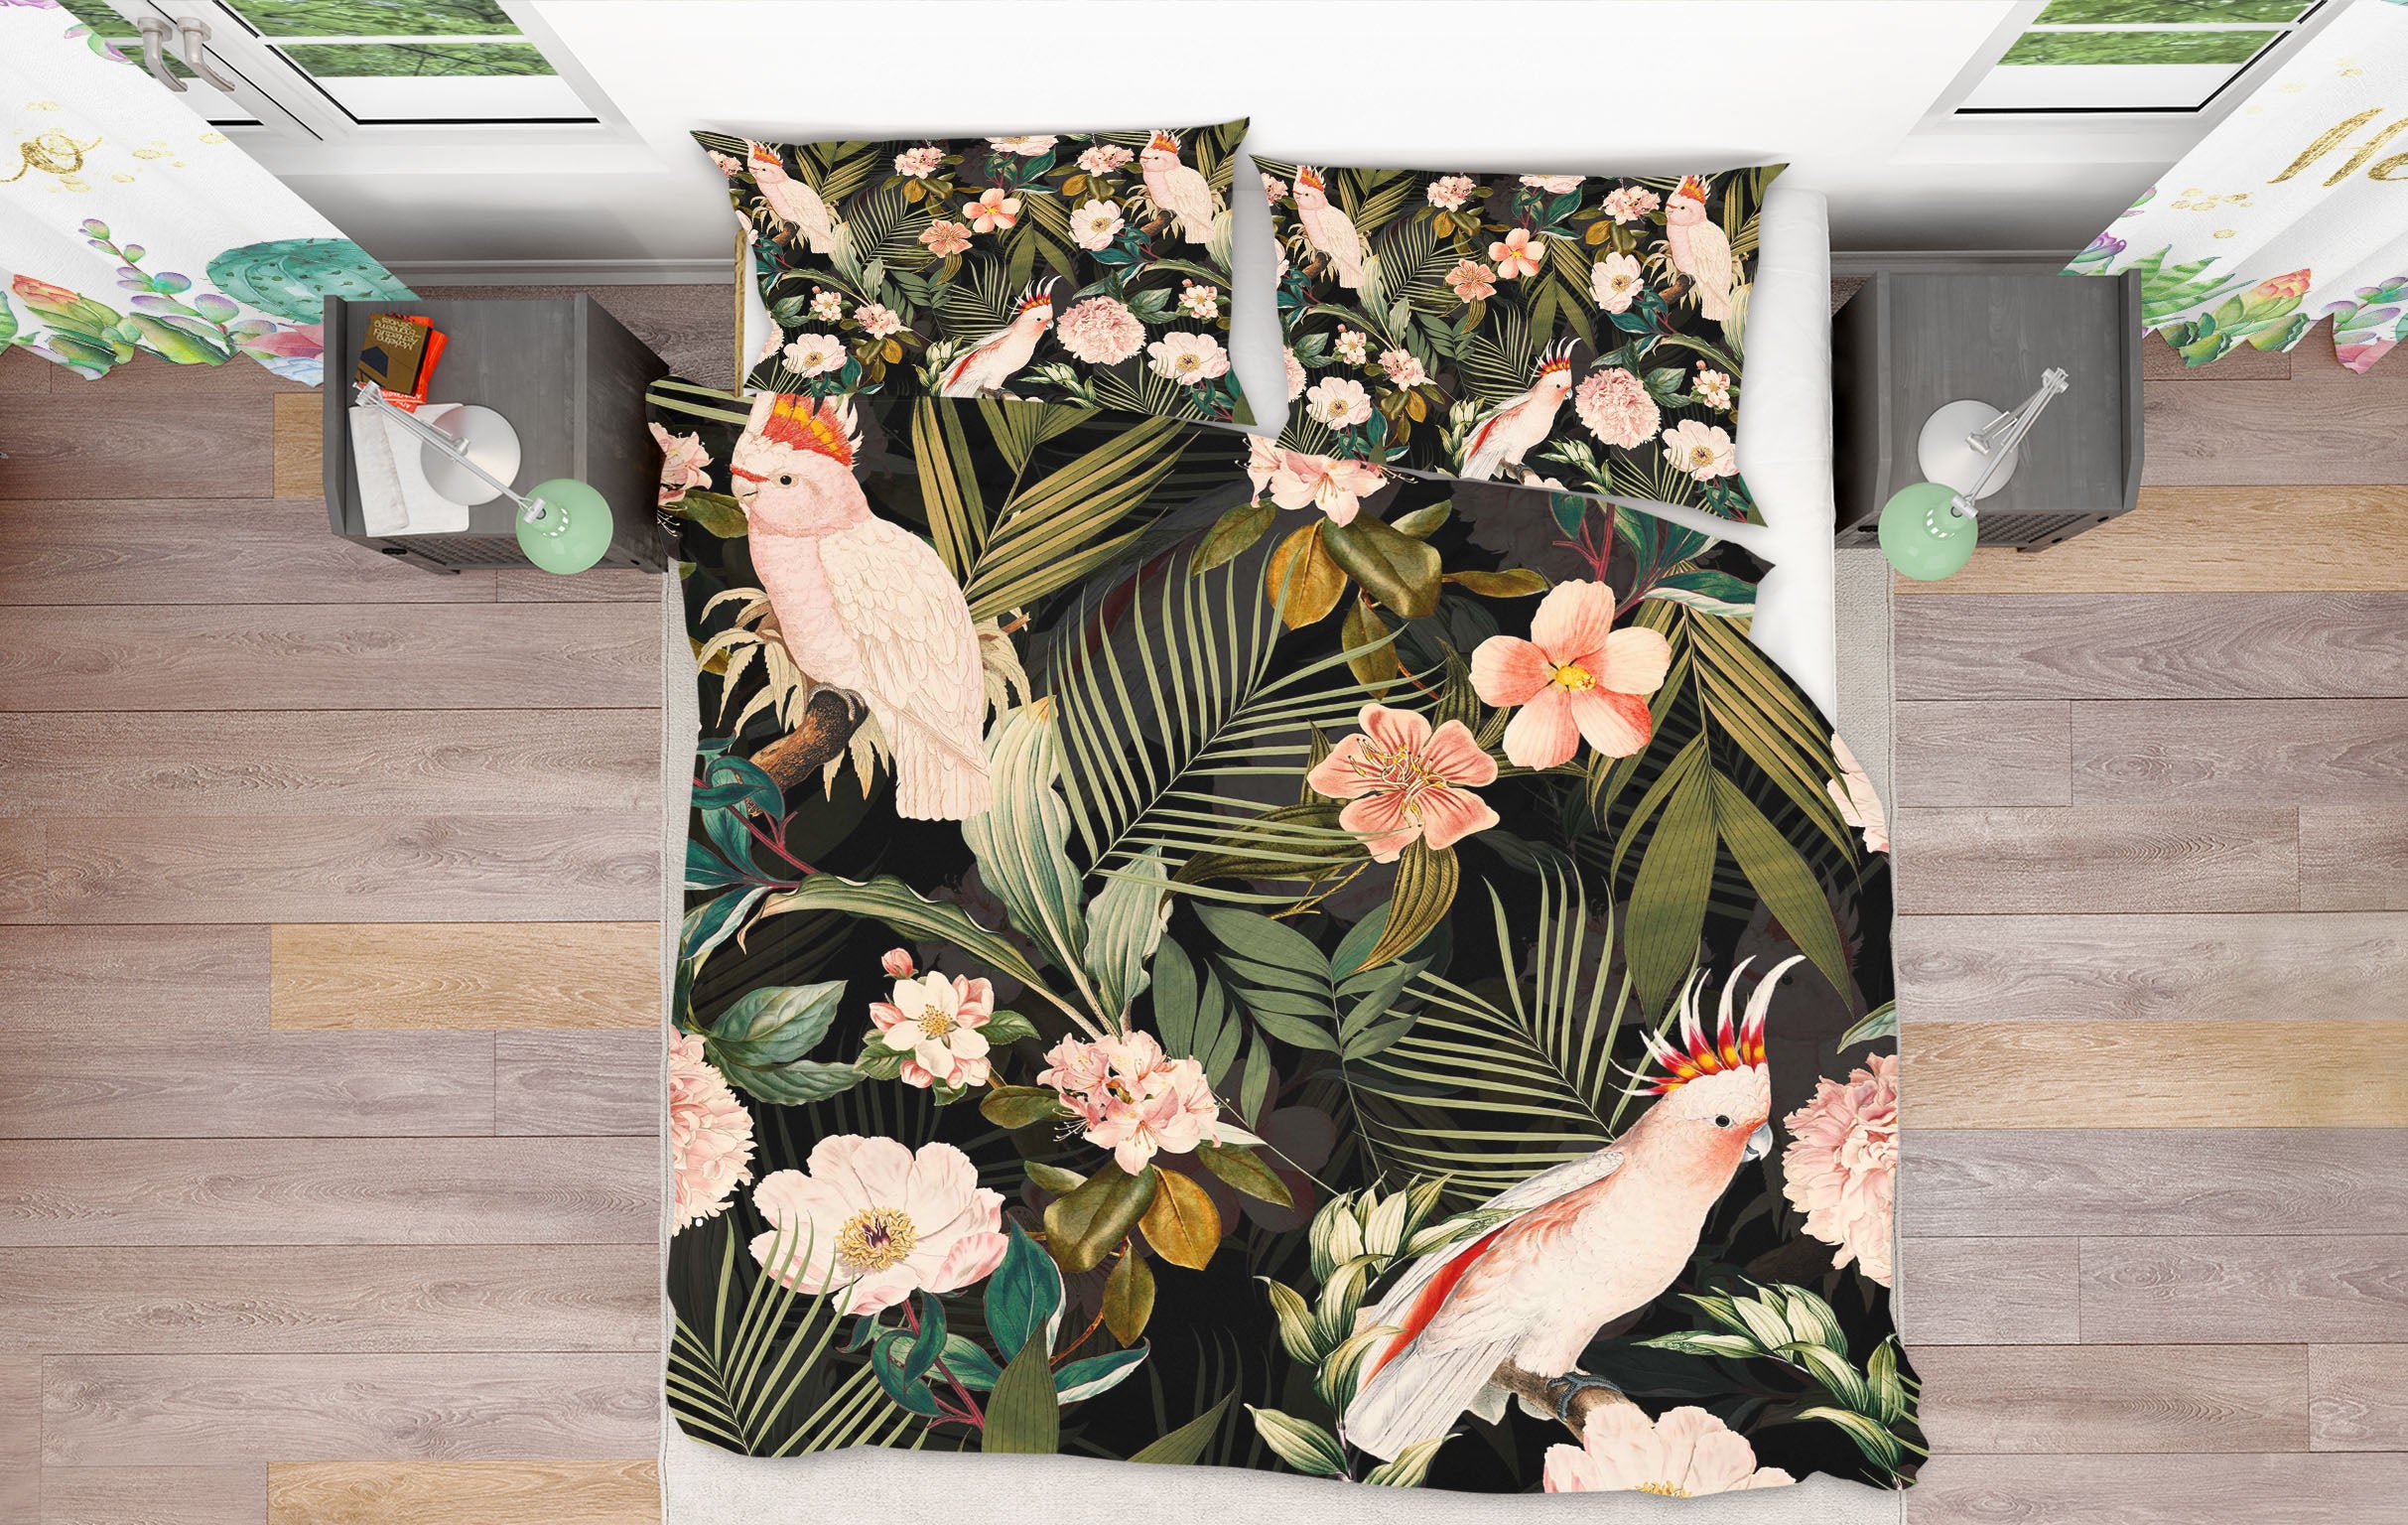 3D Parrot Flower Leaf 136 Uta Naumann Bedding Bed Pillowcases Quilt